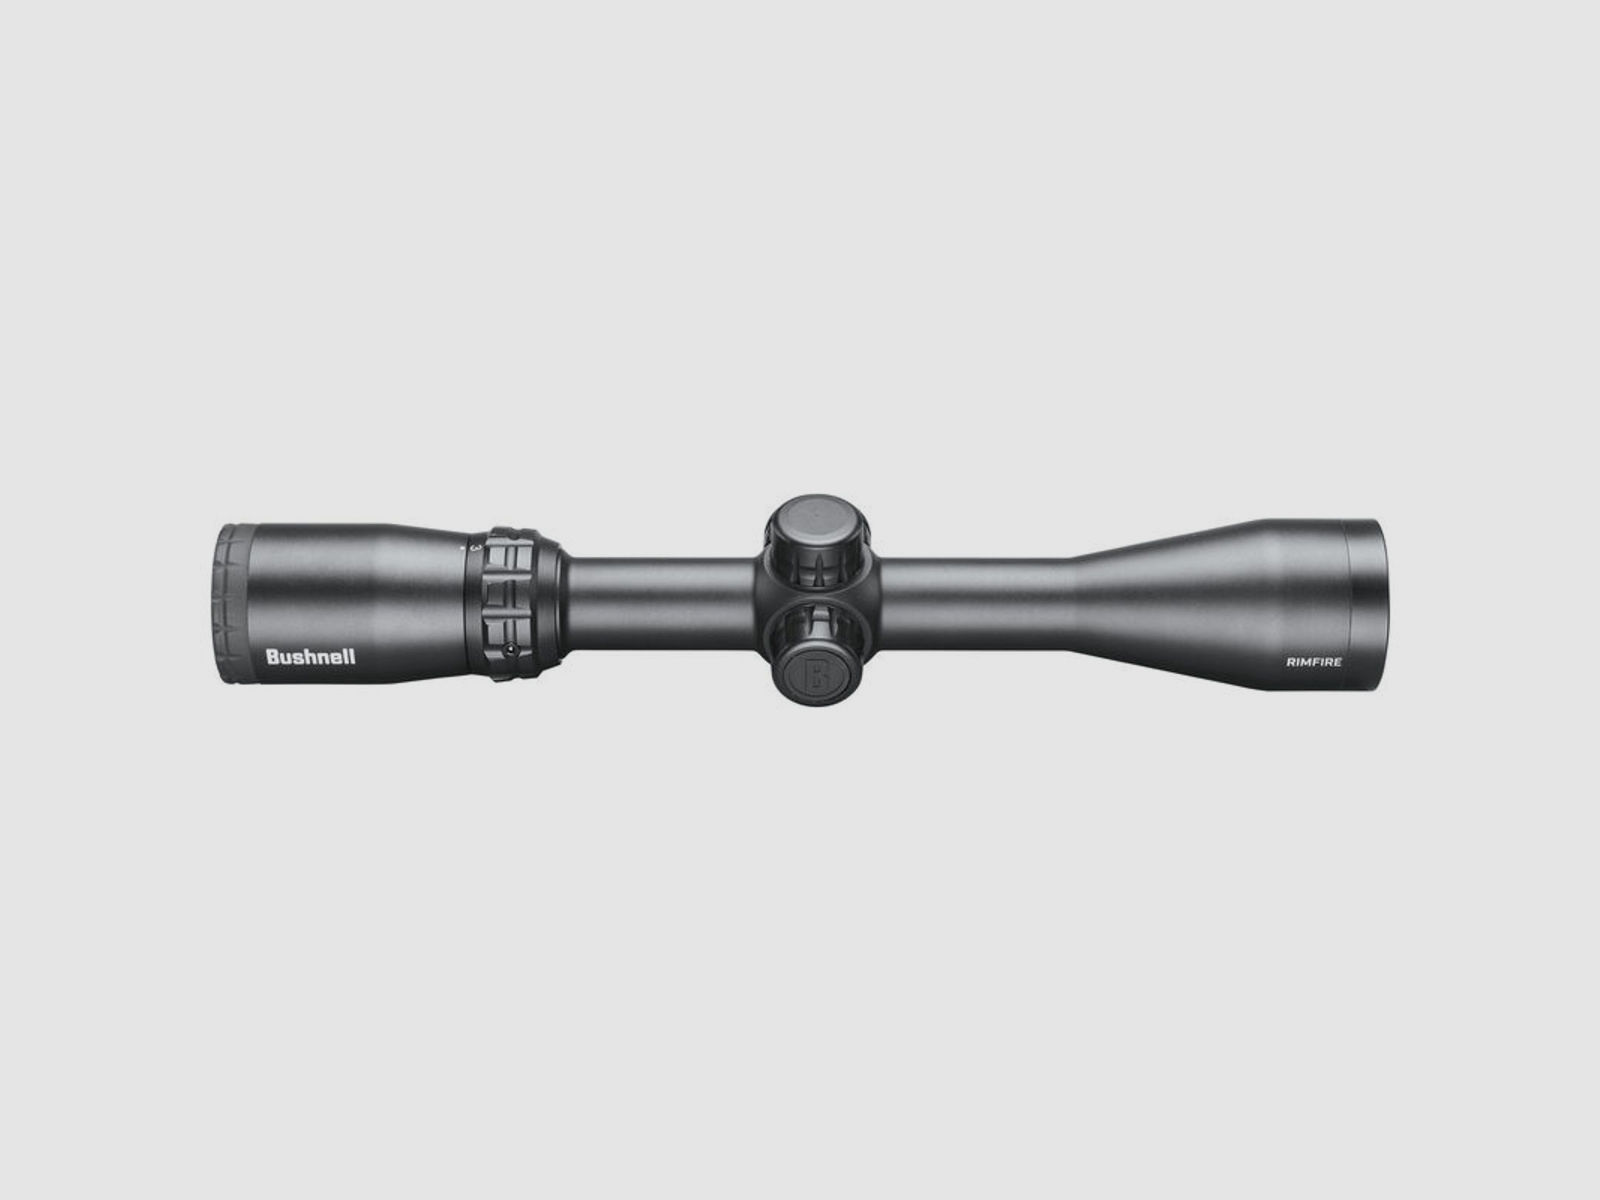 Bushnell Zielfernrohr Rimfire 3-9x40 Leuchtabsehen Dropzone 22 SFP 25,4mm